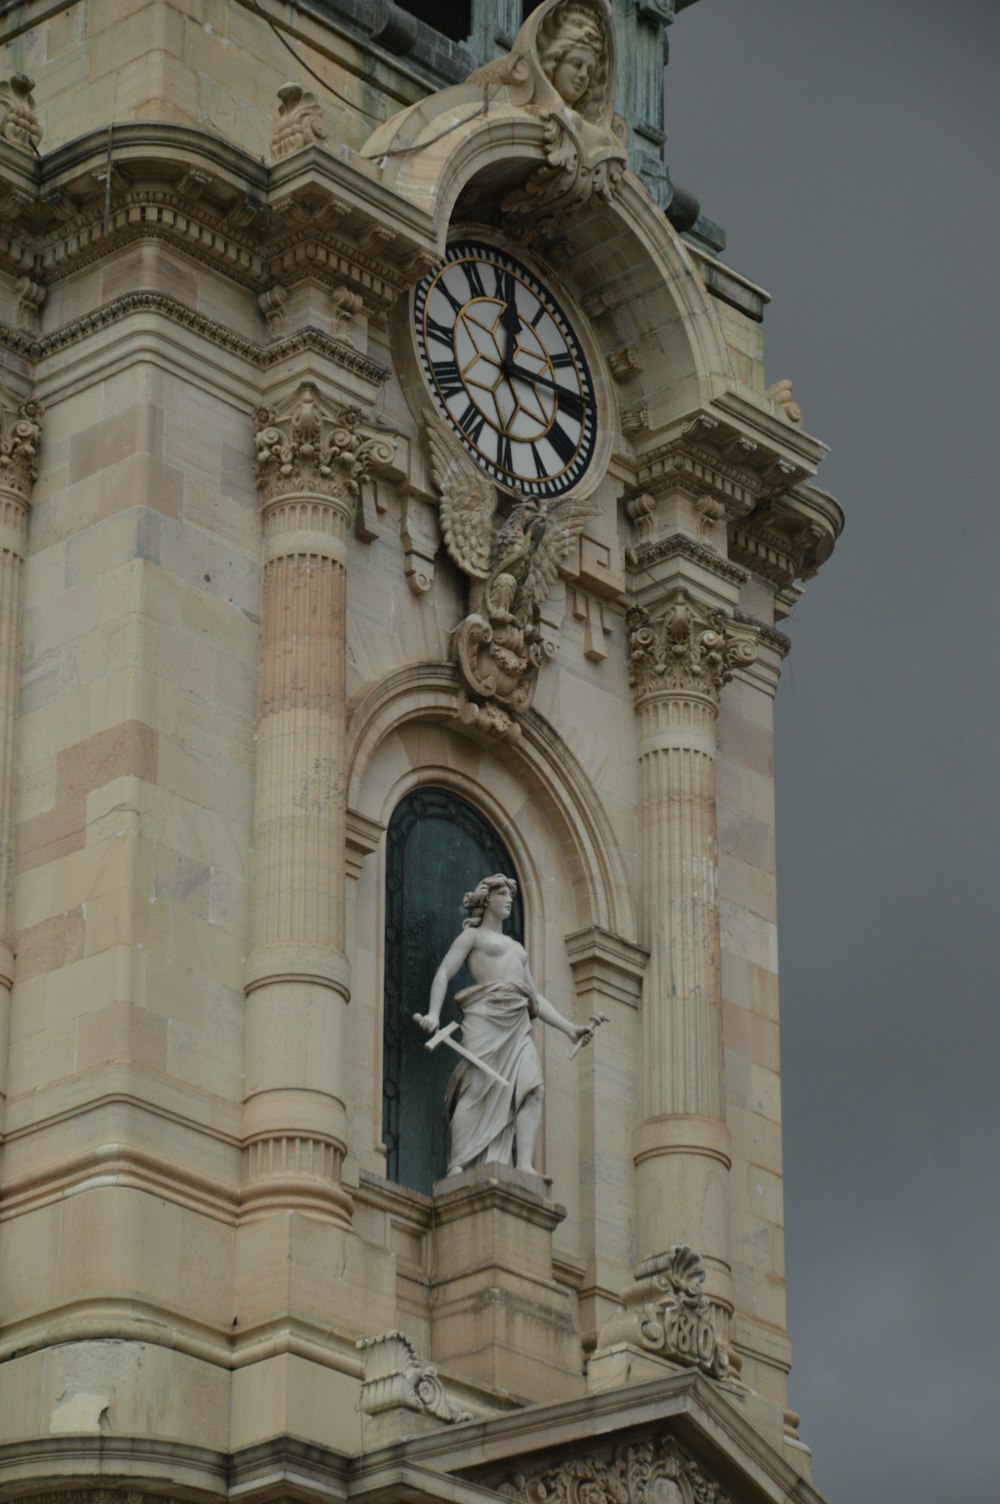 uma torre de relógio alta com uma estátua no topo dela